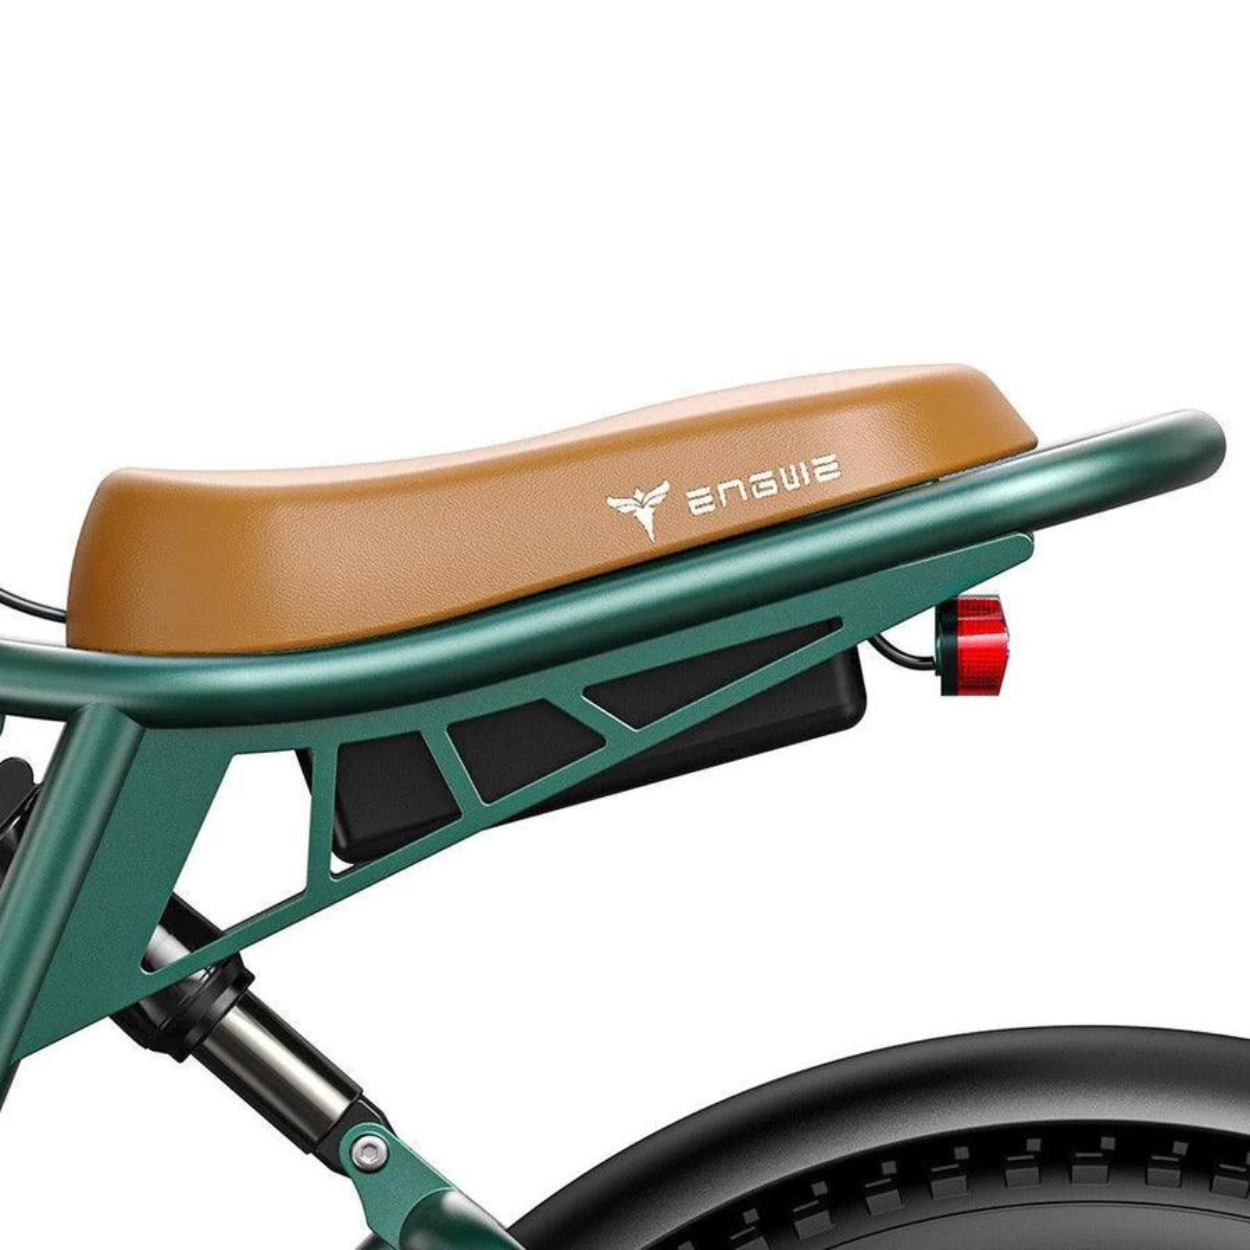 Vélo électrique Fatbike | Engwe M20 | 750 W | V-max 25 km/h | Autonomie 150 km - Atom Motors